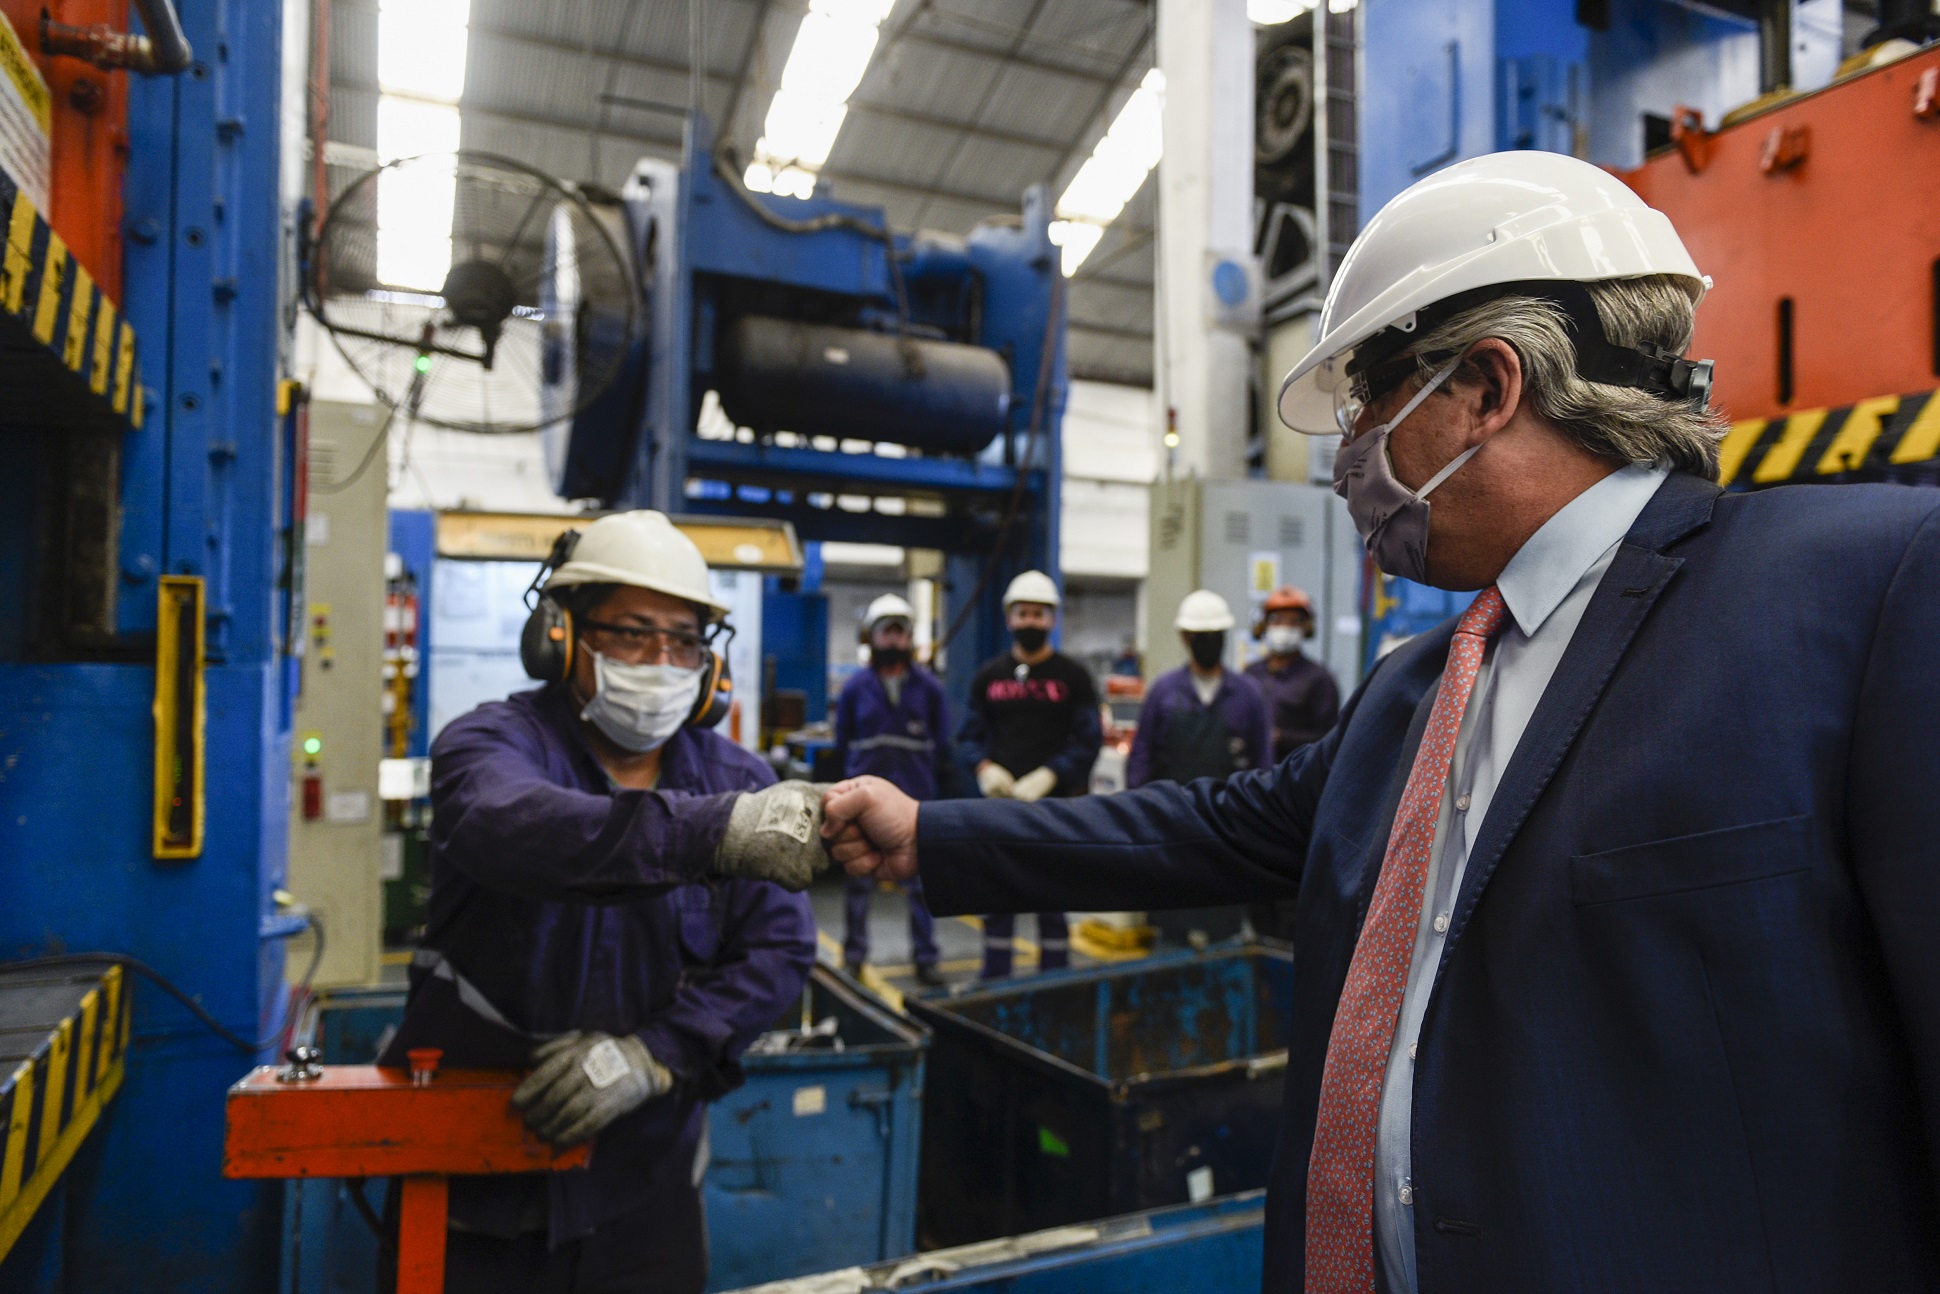 Baradero: El Presidente visitó una autopartista nacional que fabricará piezas para el nuevo modelo Volkswagen Taos